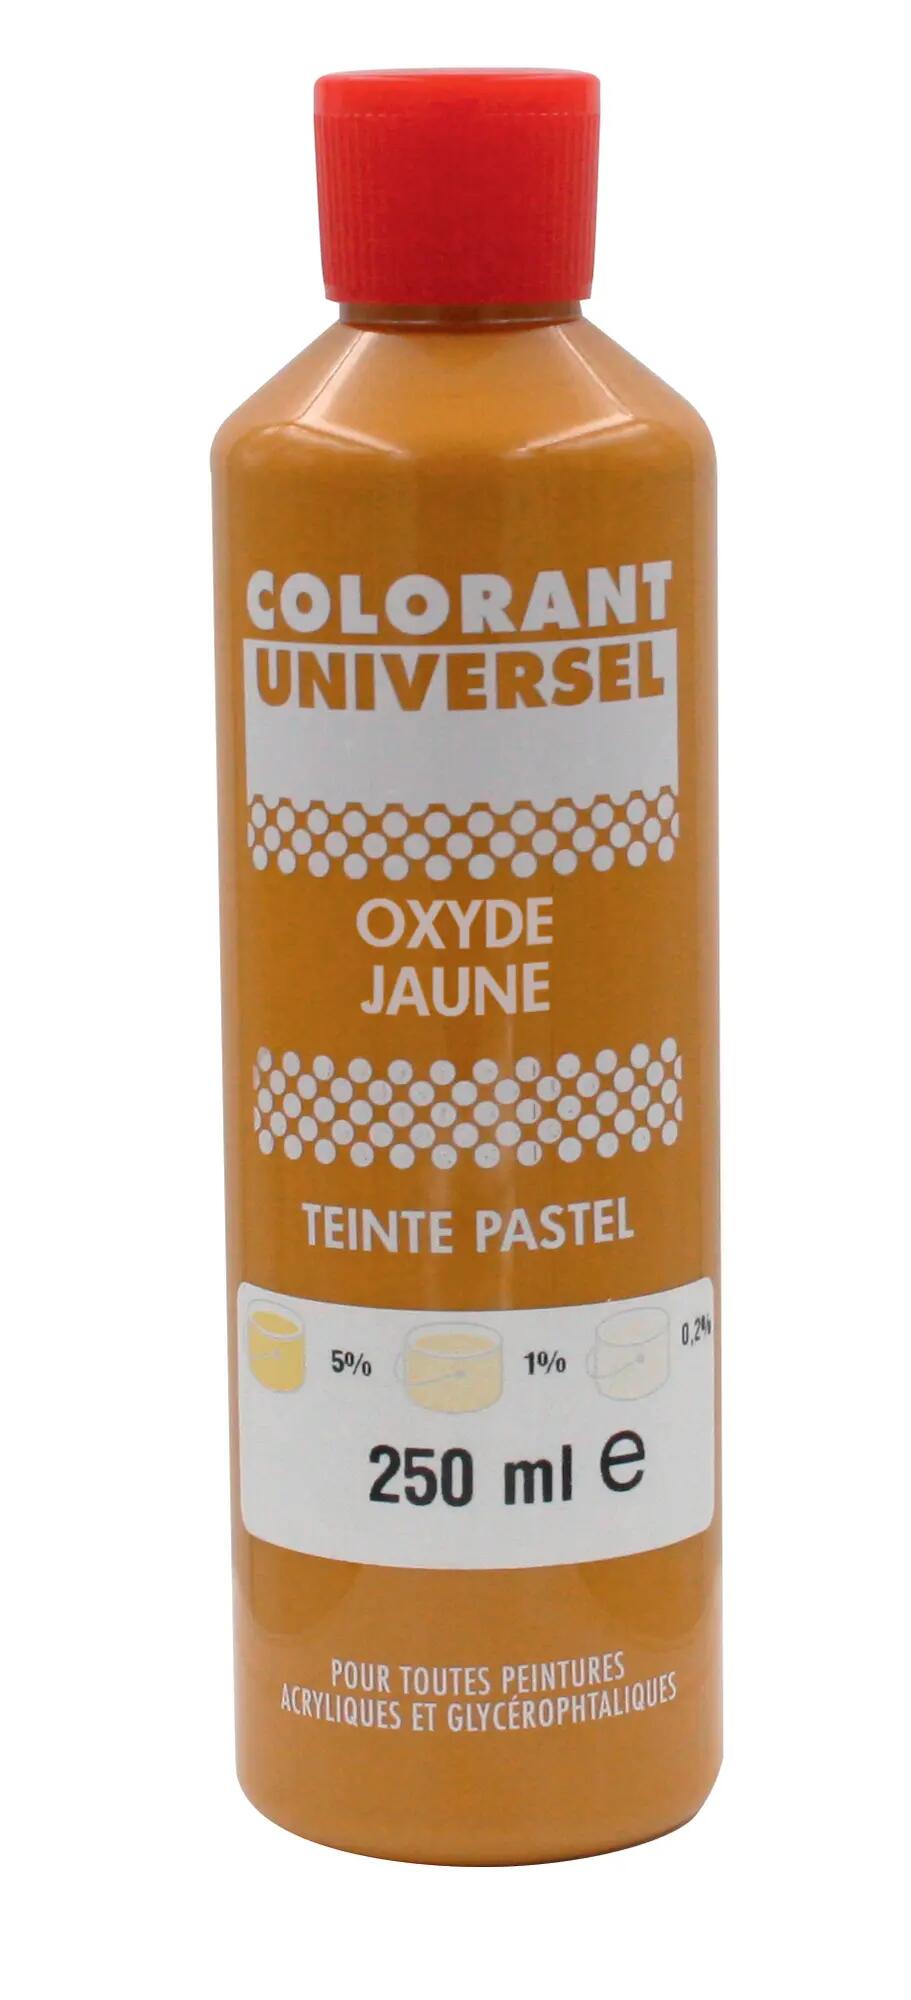 Colorant universel pour peinture oxyde jaune 250ml